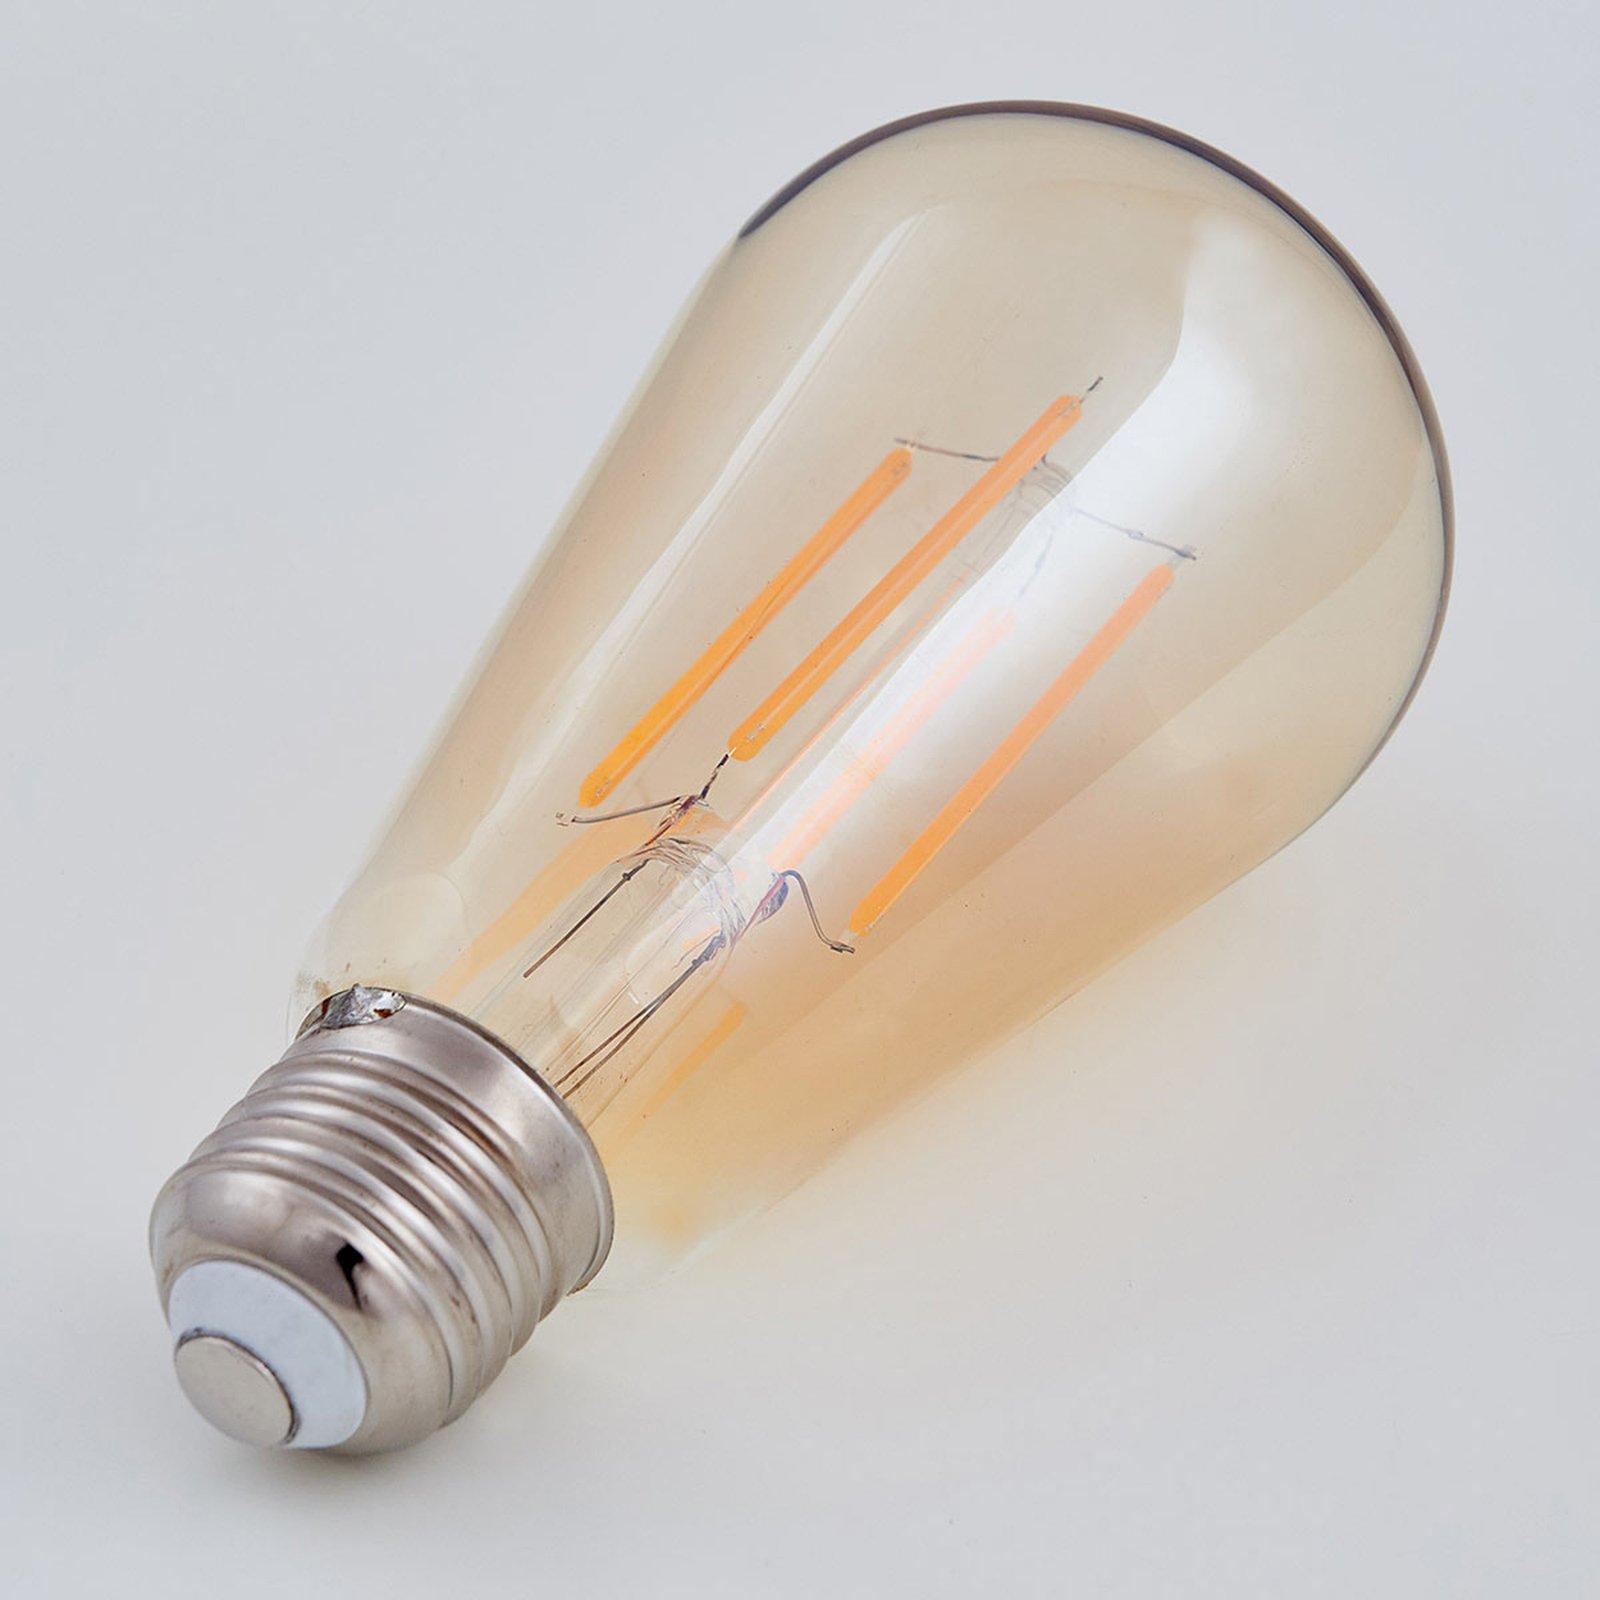 E27 rustic LED bulb 6W 500lm amber 1,800K 2-pack